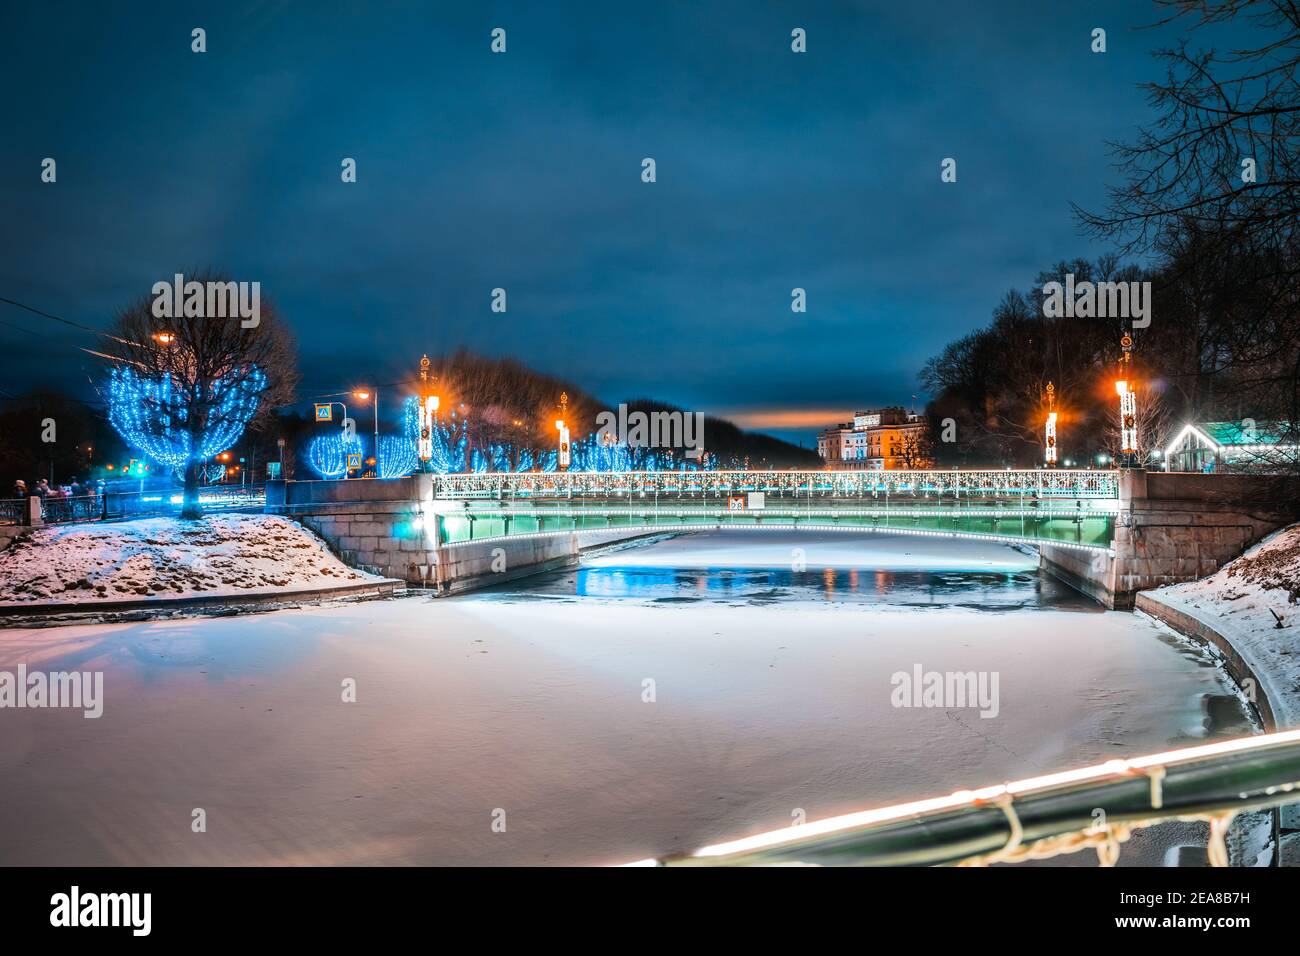 Vue sur le deuxième pont de Sadovy en hiver à Saint-Pétersbourg. Illuminations de vacances en ville. Banque D'Images